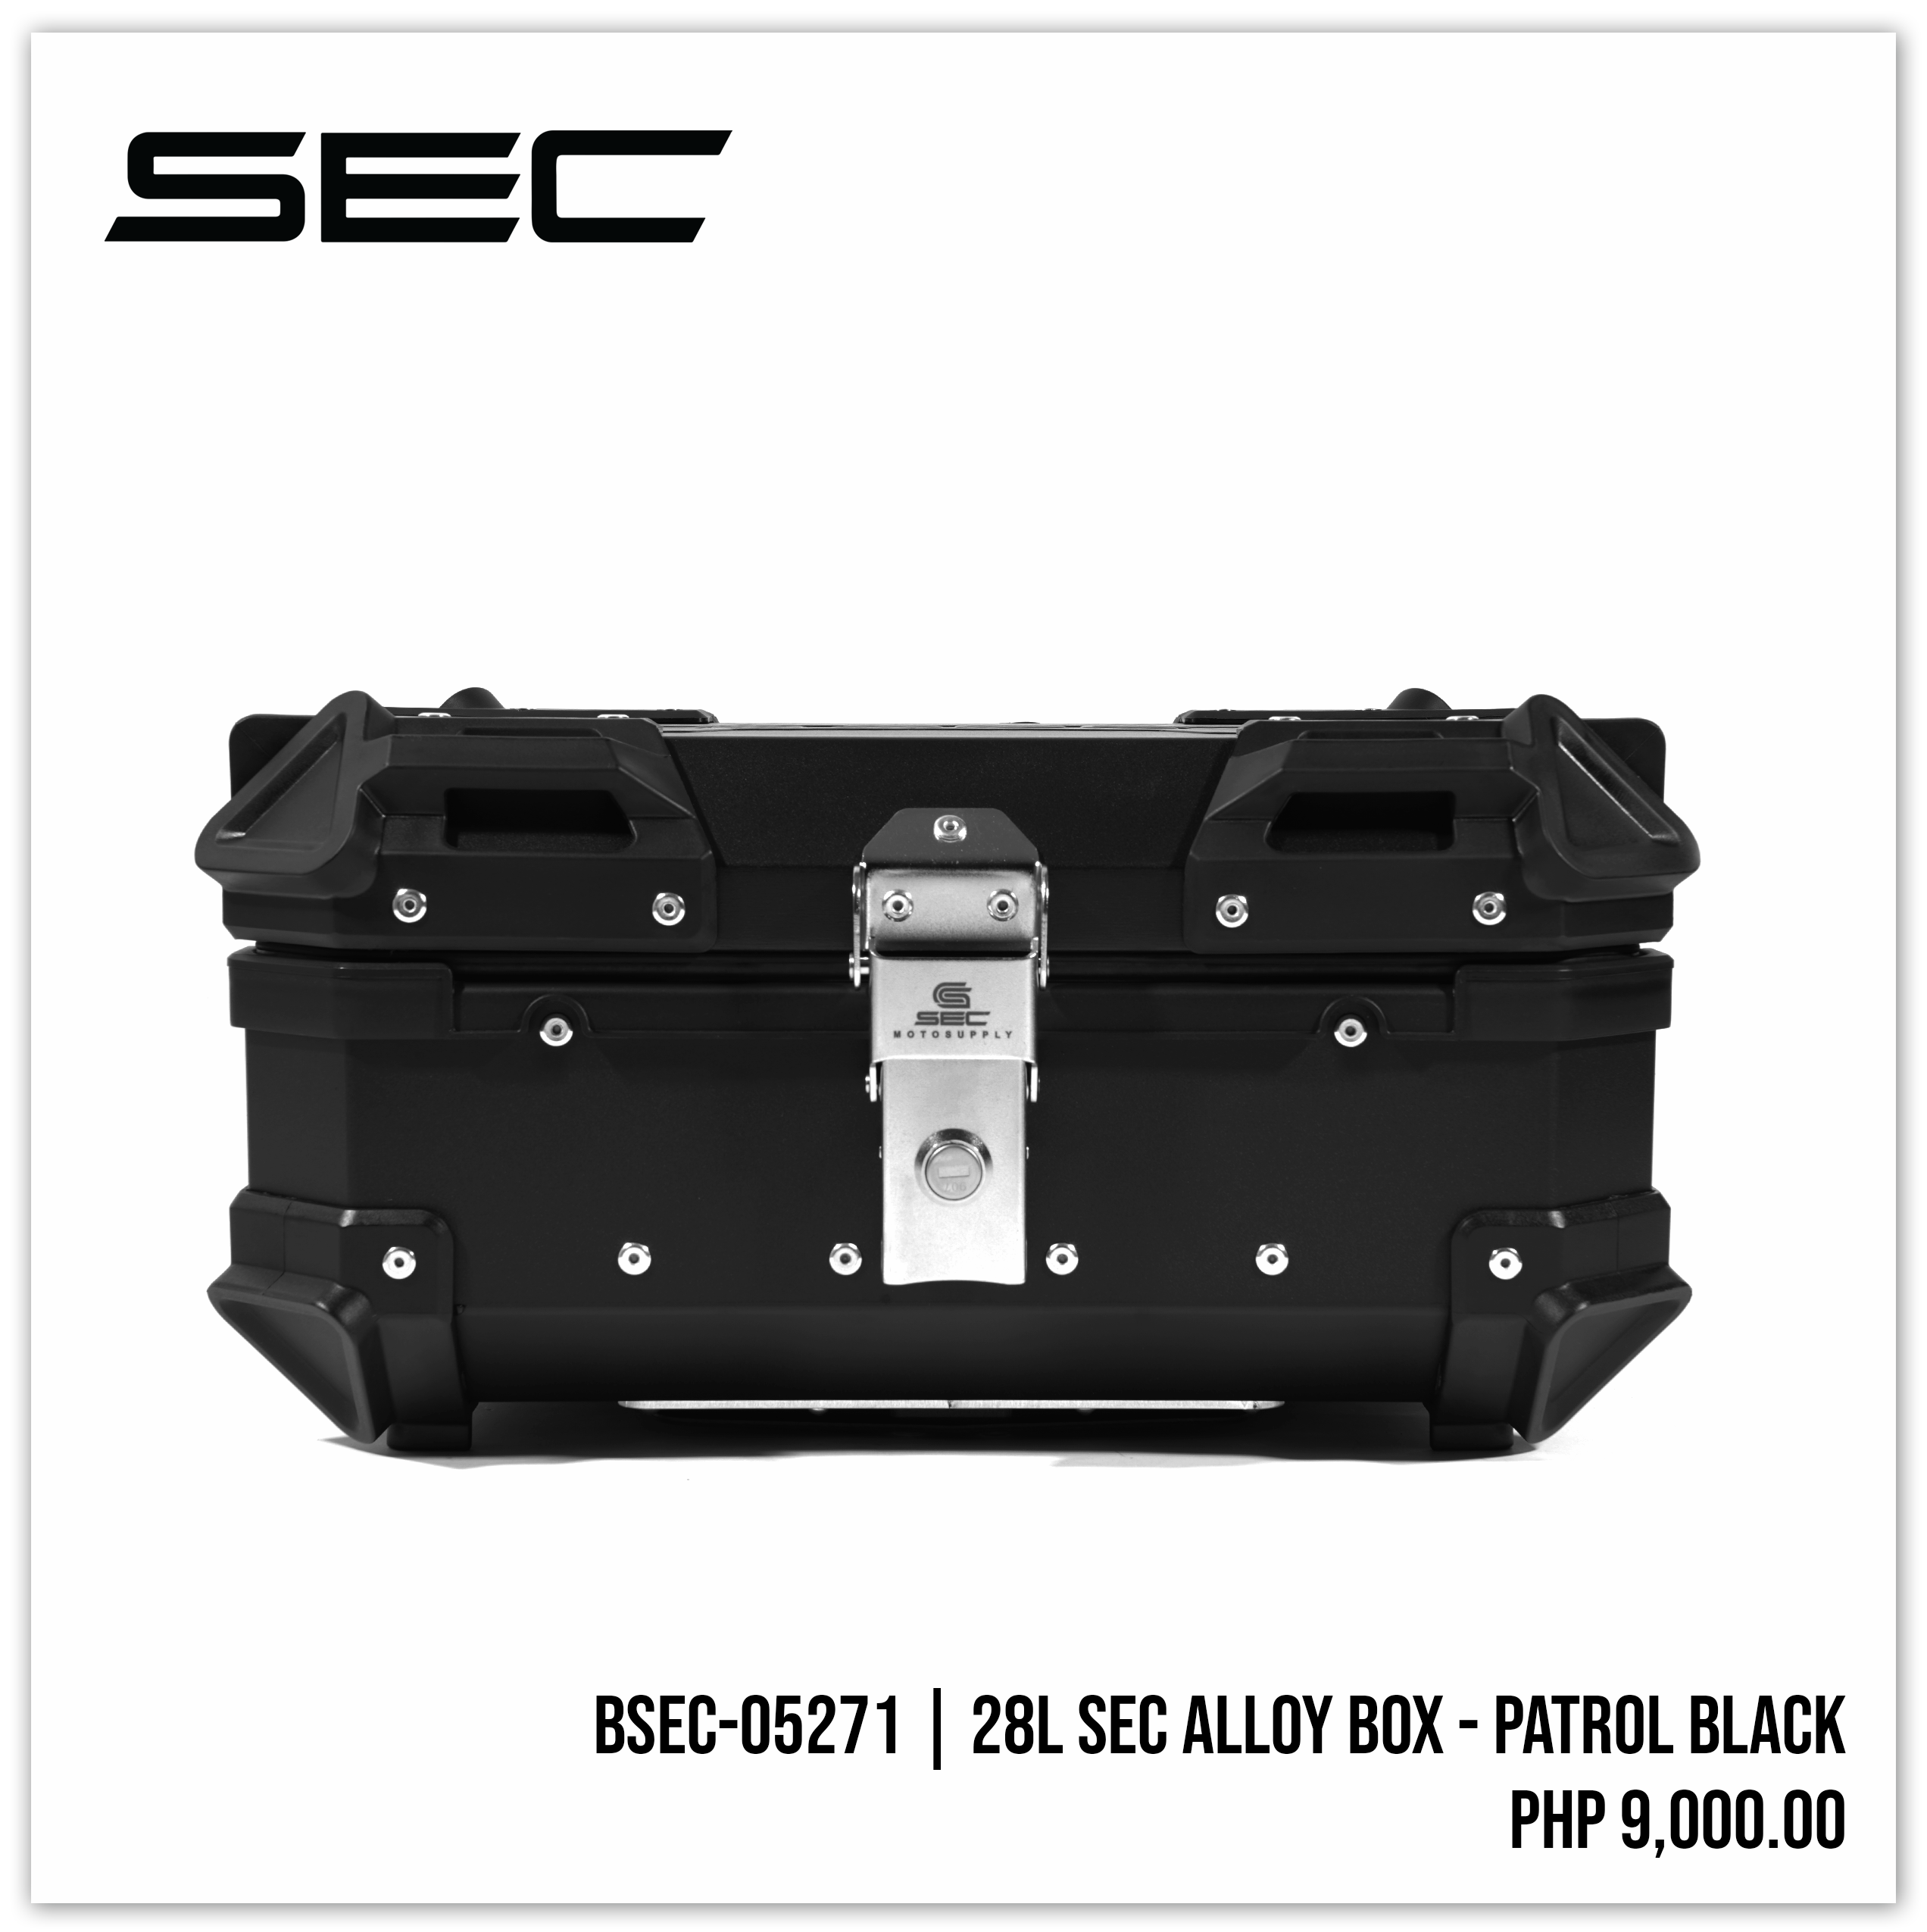 28L SEC Alloy Box - Patrol Black